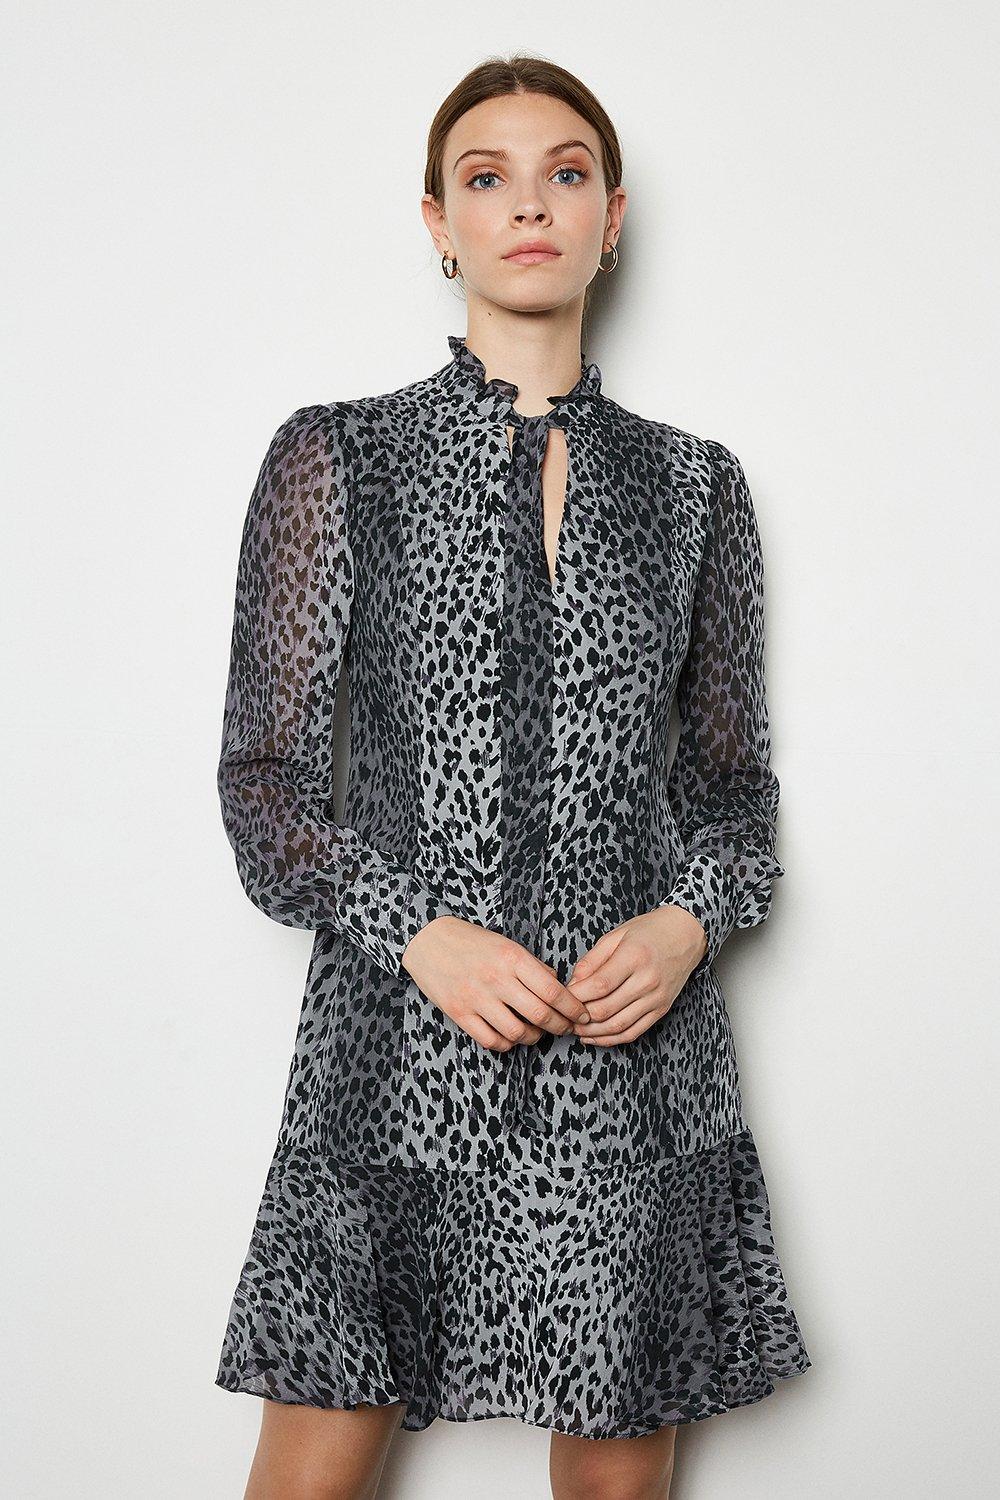 karen millen leopard print ruffle dress